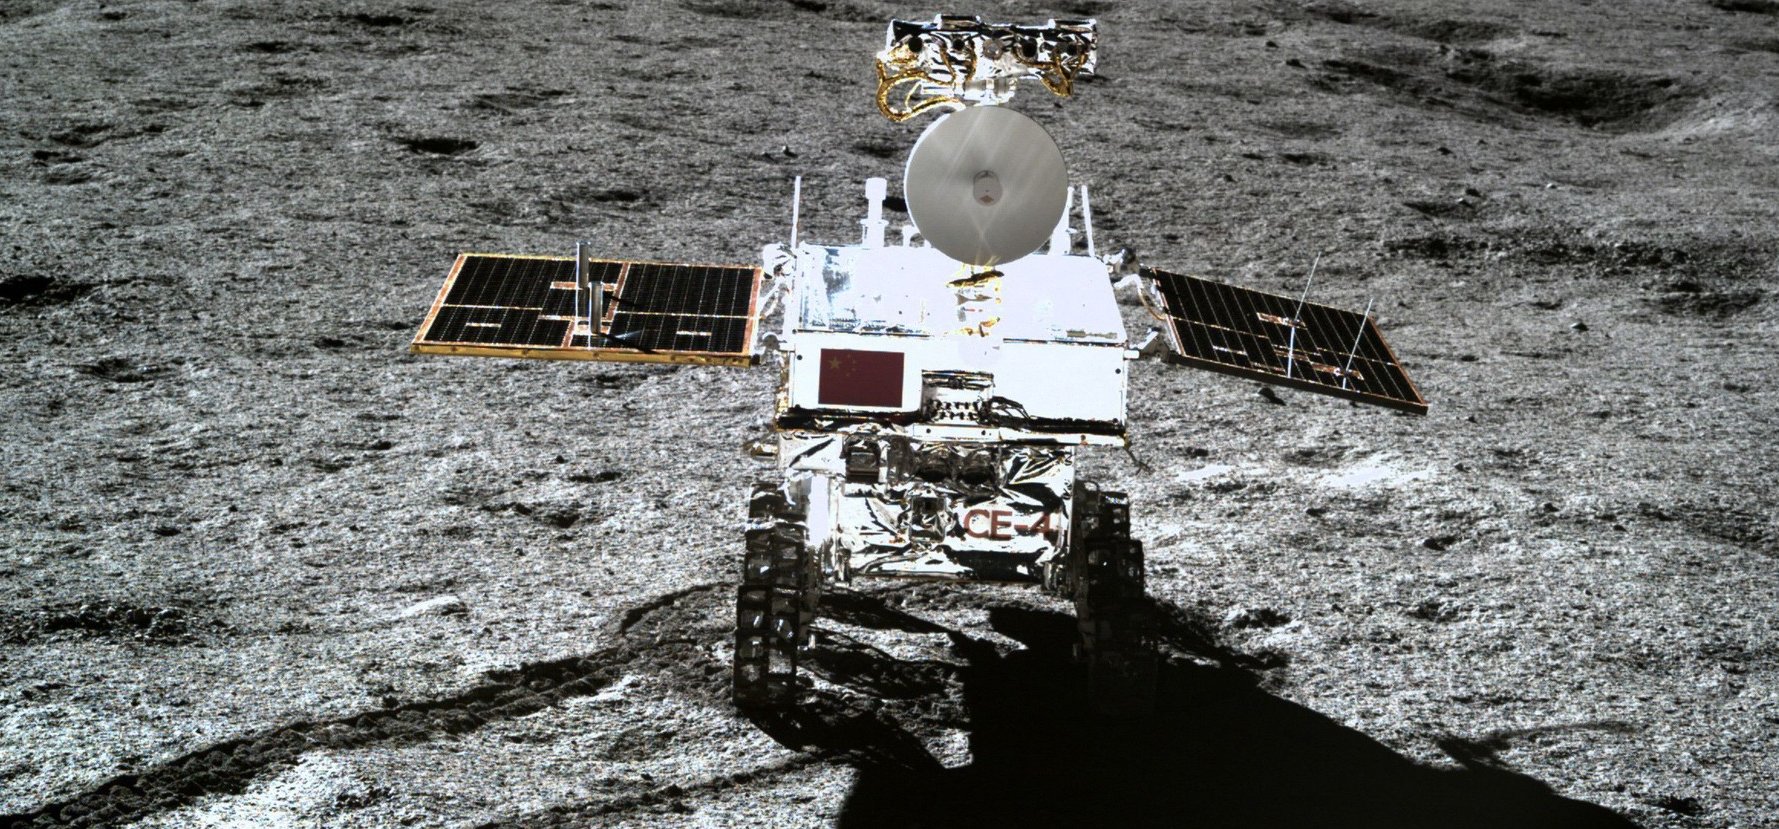 Kína egy titokzatos energiaforrást találhatott a Holdon, amely hosszú időre megoldhatná az emberiség problémáit